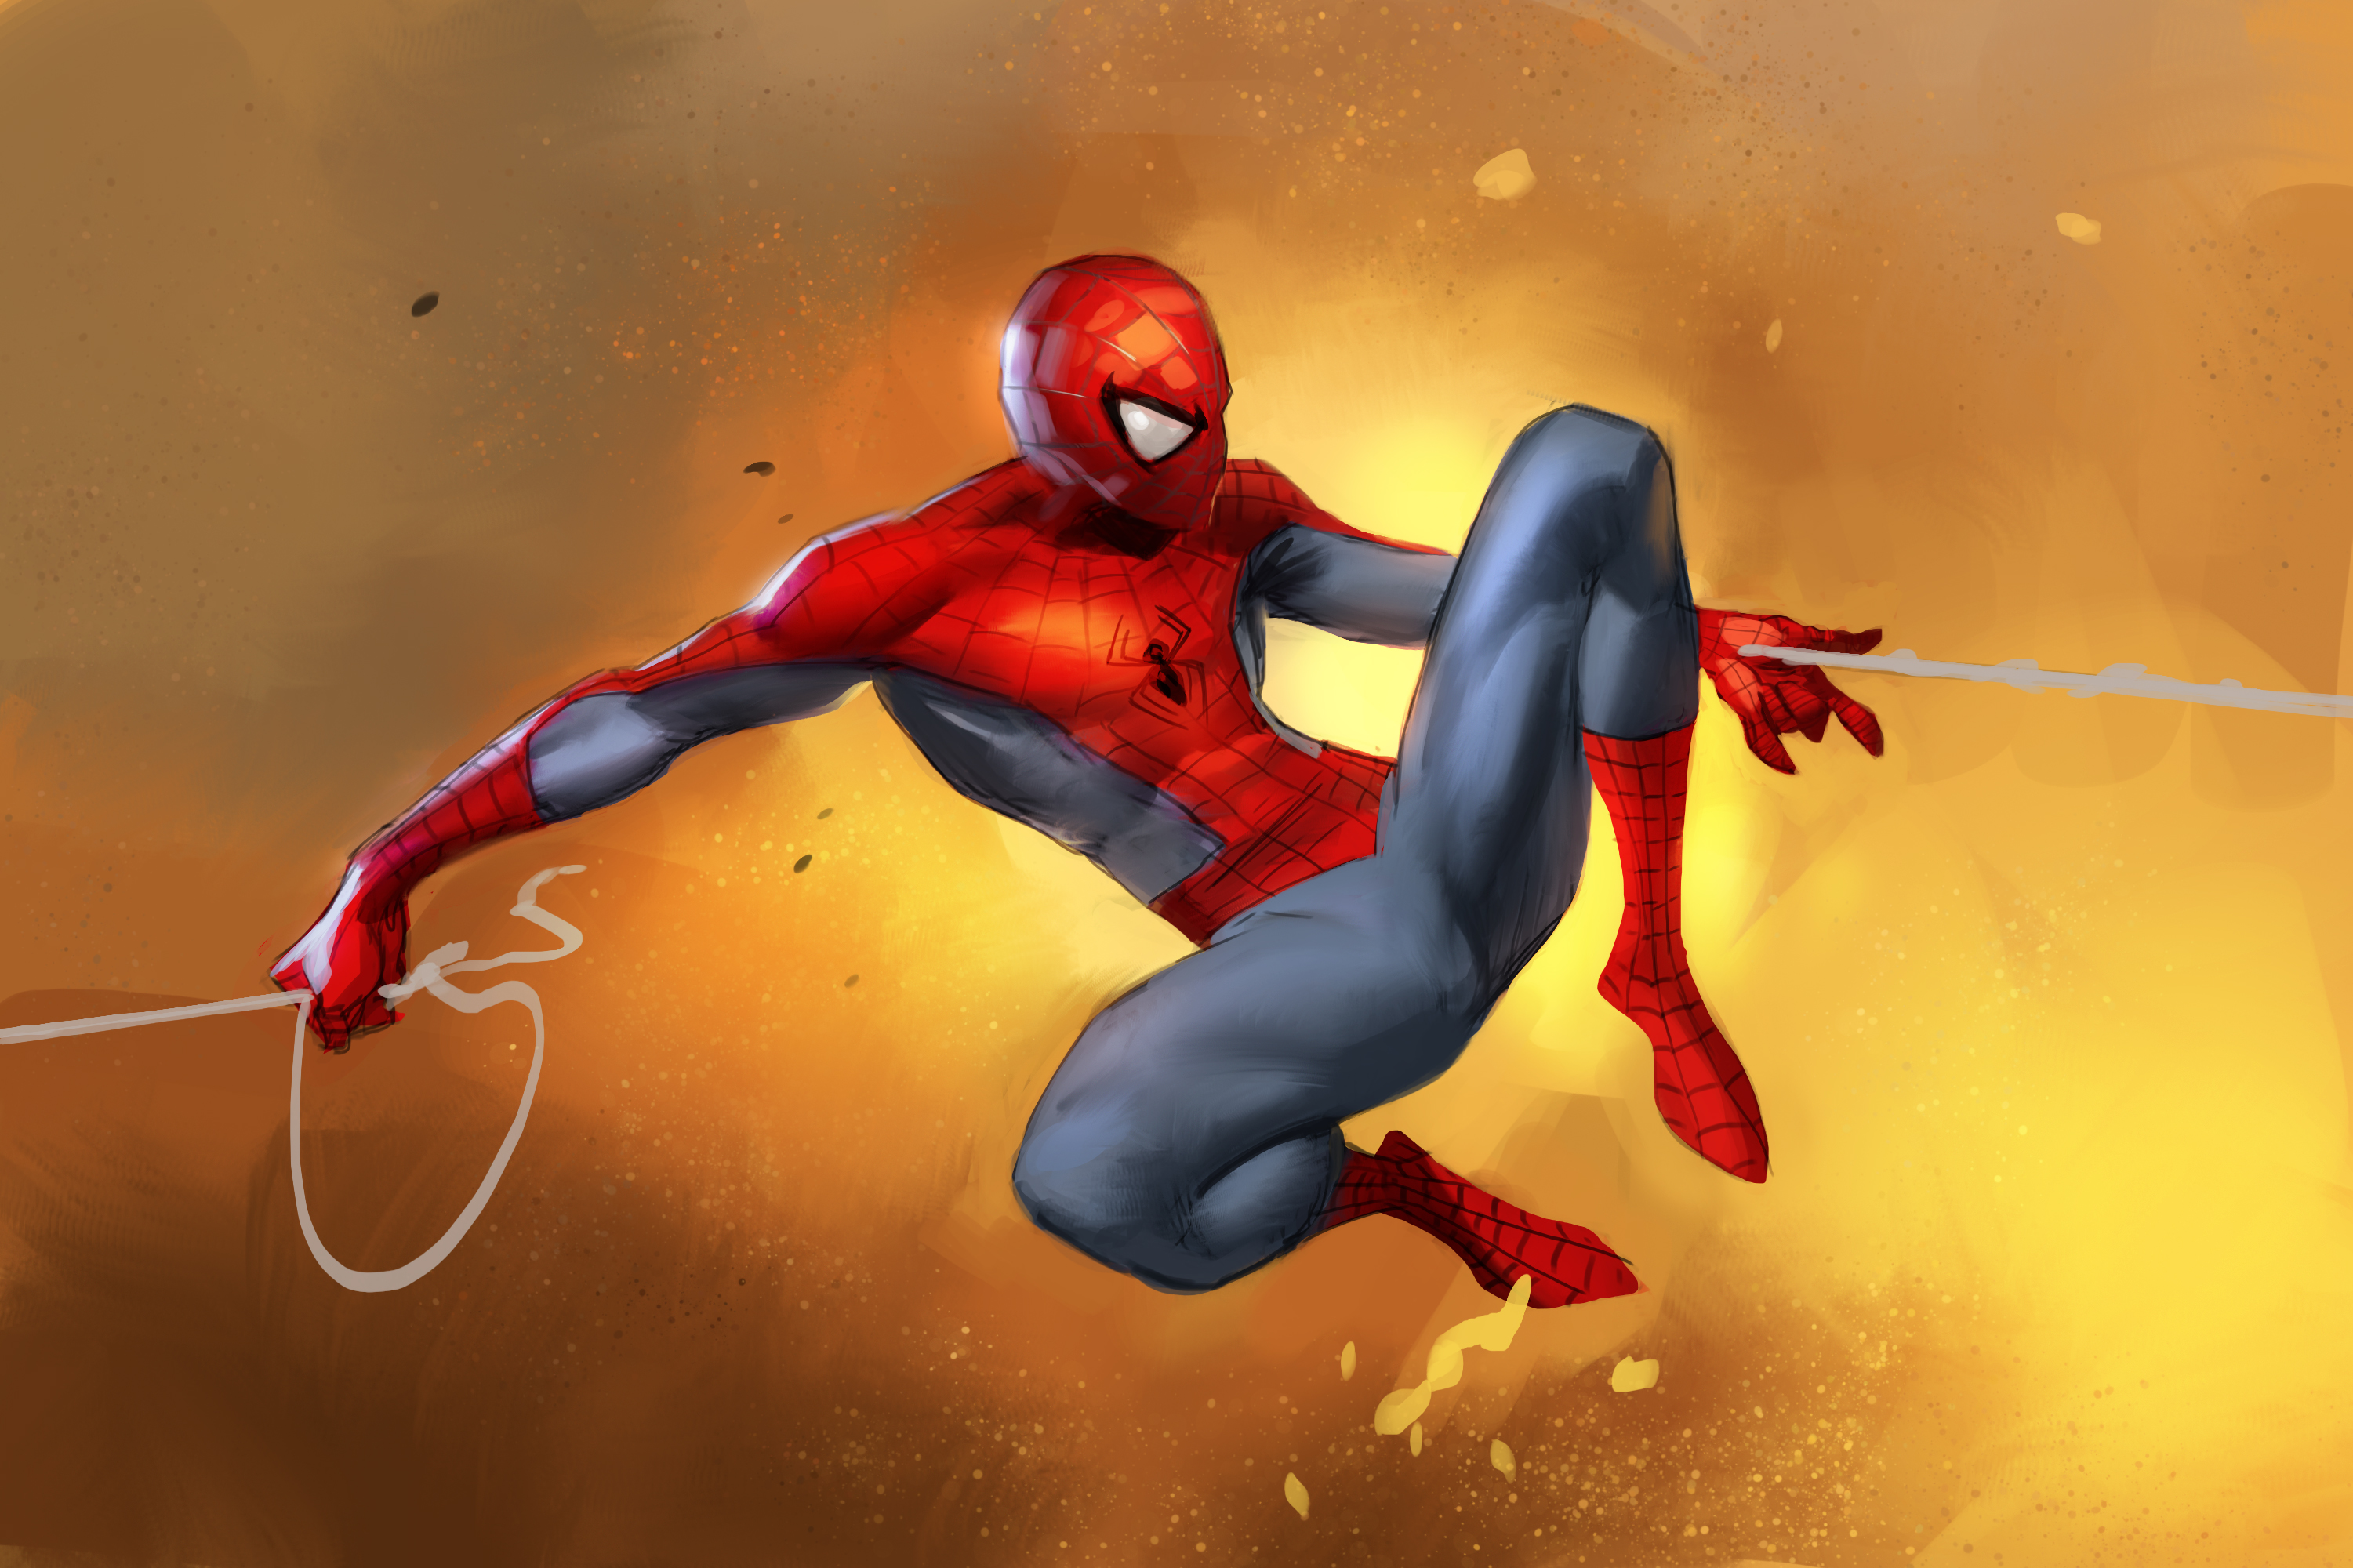 Spiderman 4k New Digital Artwork, HD Superheroes, 4k Wallpapers, Images